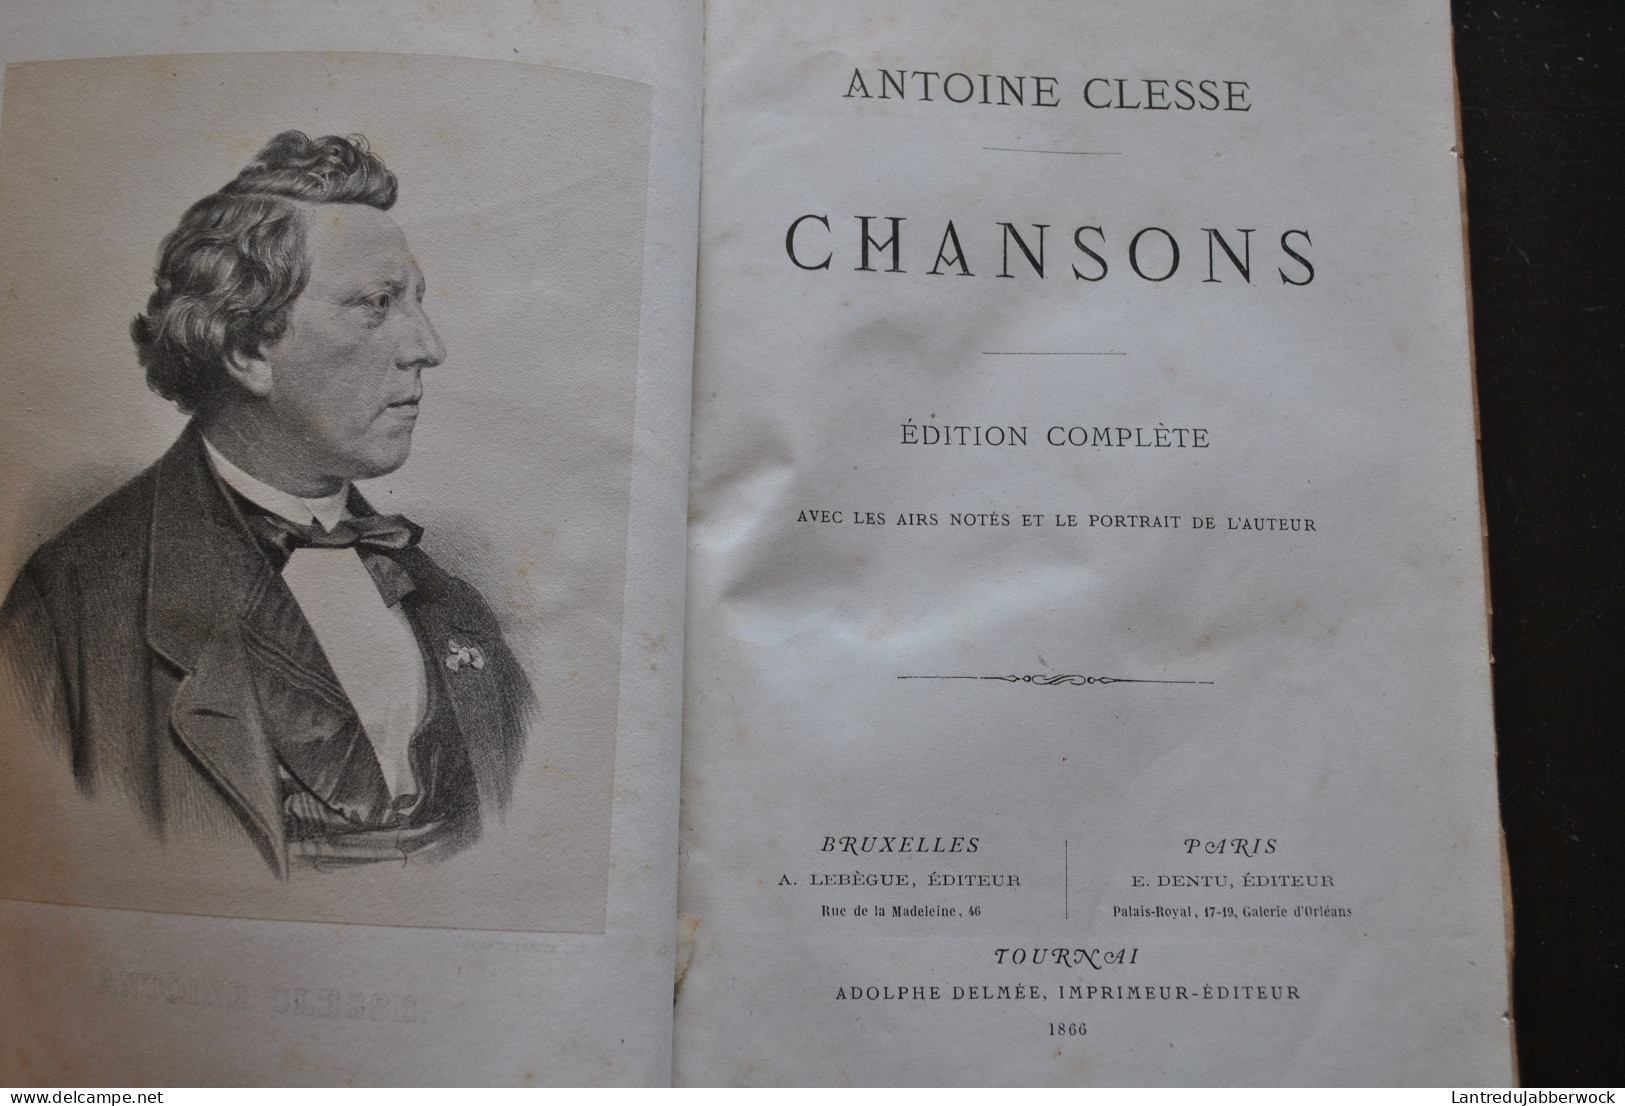 ANTOINE CLESSE CHANSONS Edition Complète Airs Notés 1866 Régionalisme CHANSONNIER BELGIQUE MUSIQUE PATRIMOINE FOLKLORE - Belgique